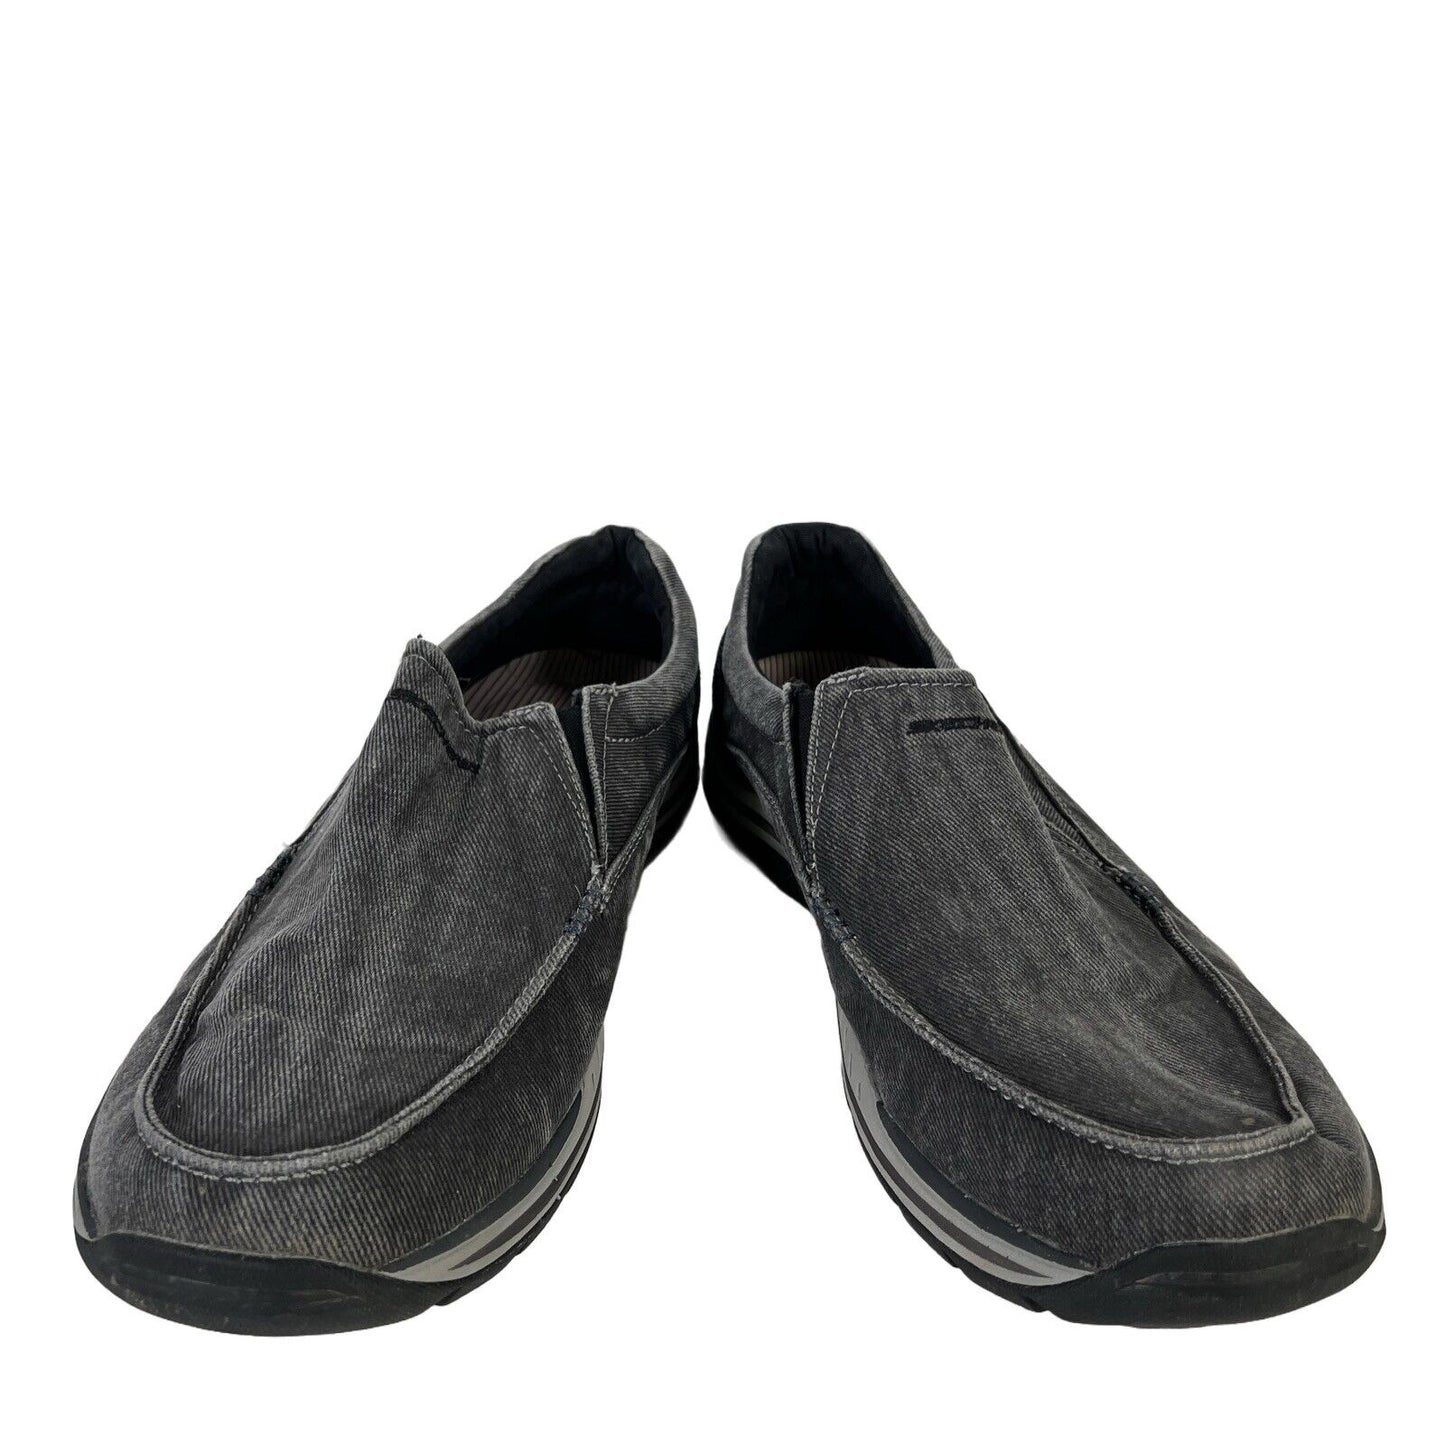 Skechers Men's Gray Expected Avillo Relaxed Fit Slip On Loafers - 12